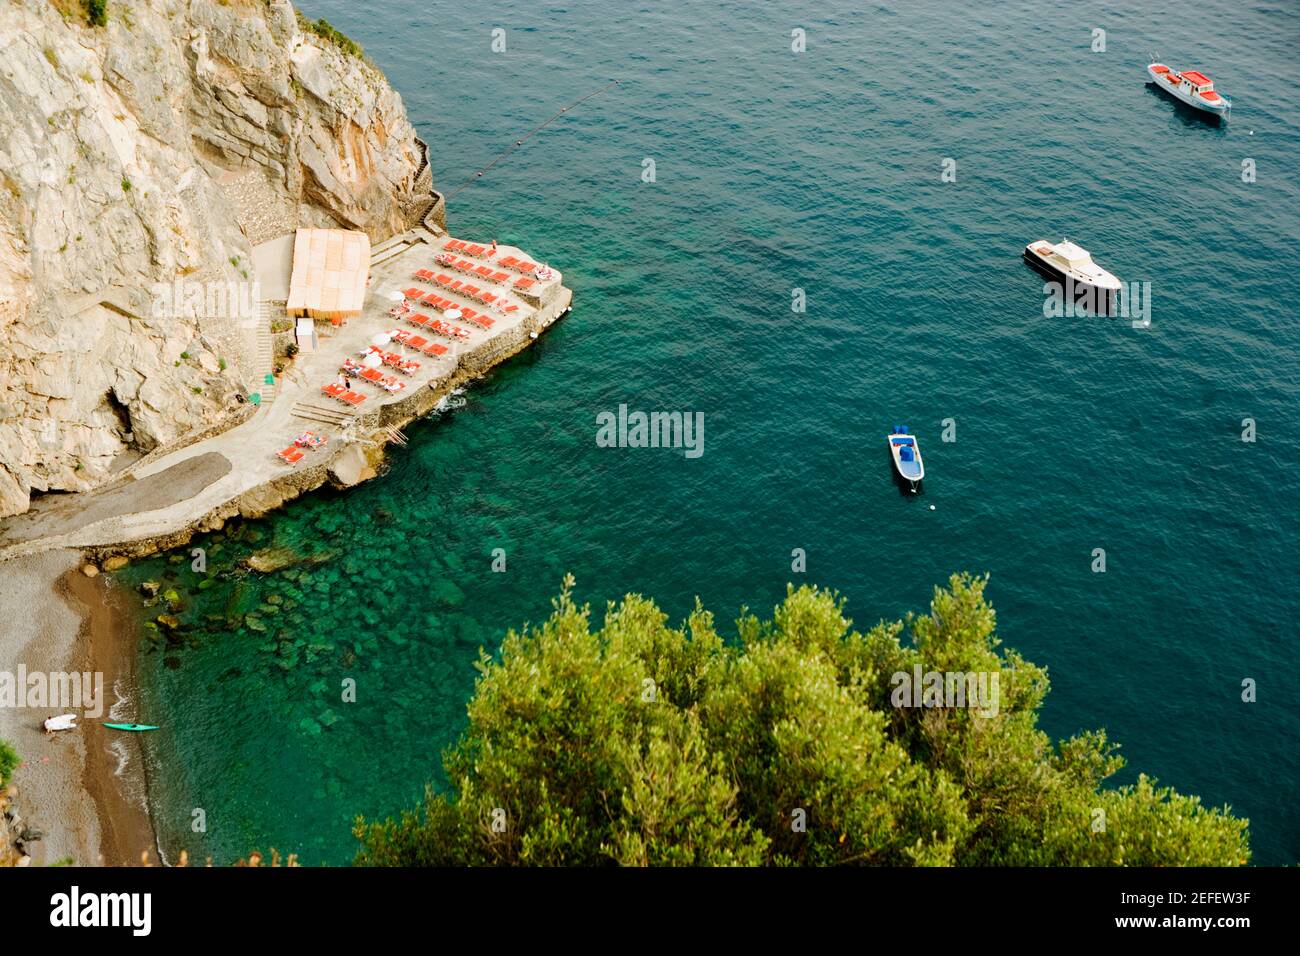 Vista ad alto angolo delle barche galleggianti sull'acqua, Spiaggia San Pietro, Costiera Amalfitana, Salerno, Campania, Italia Foto Stock